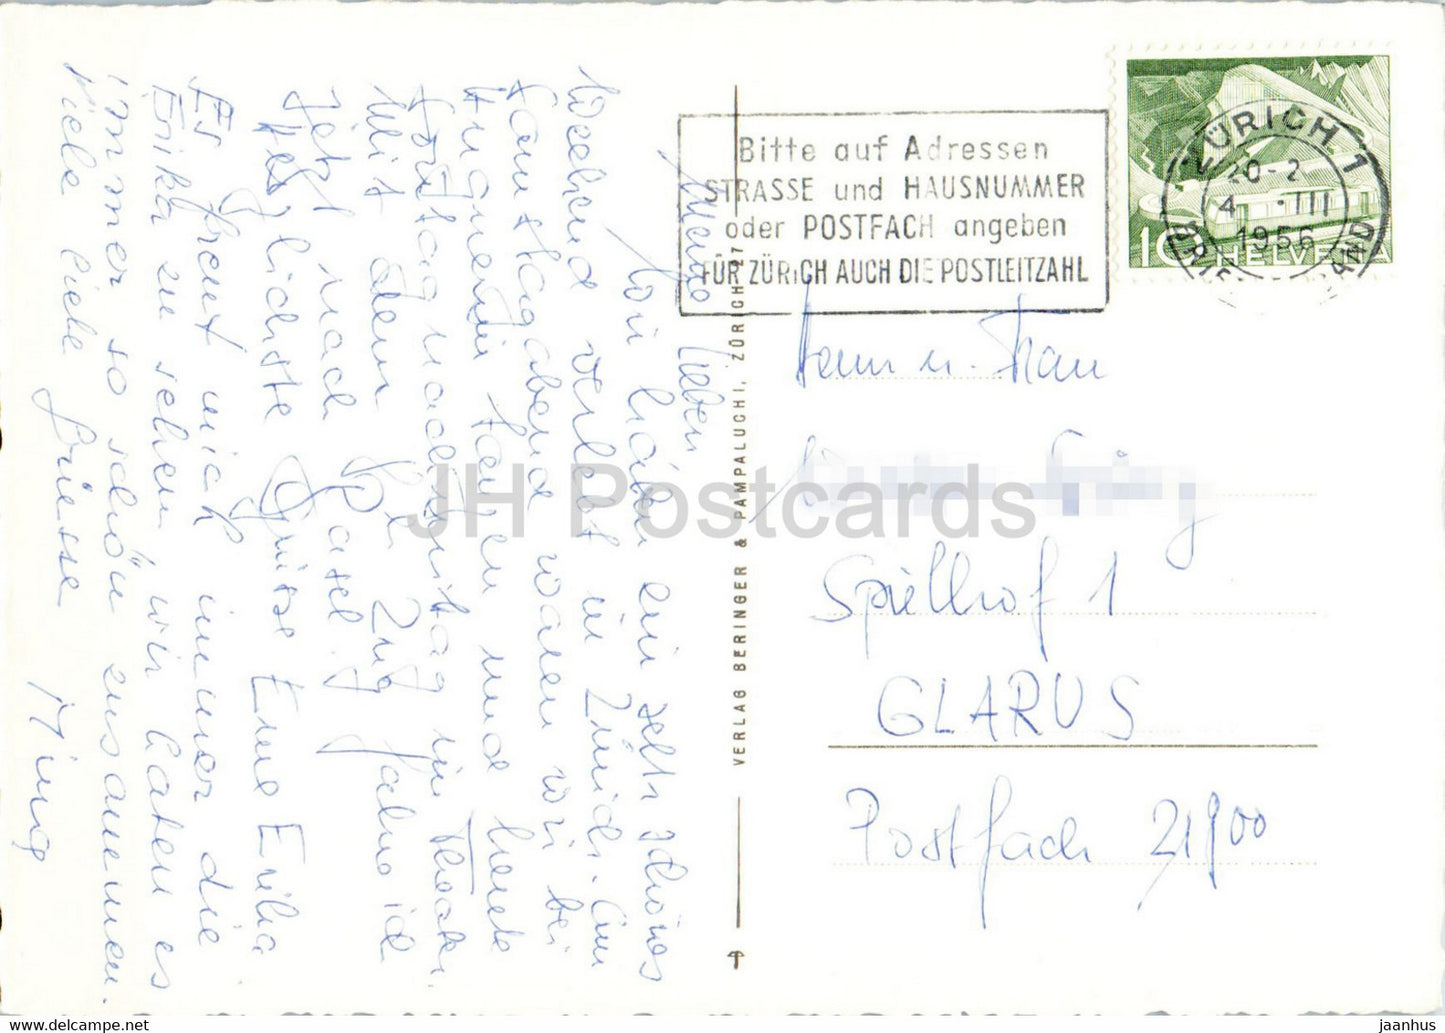 Am Zürichsee - Vögel - Schwan - 8411 - alte Postkarte - 1956 - Schweiz - gebraucht